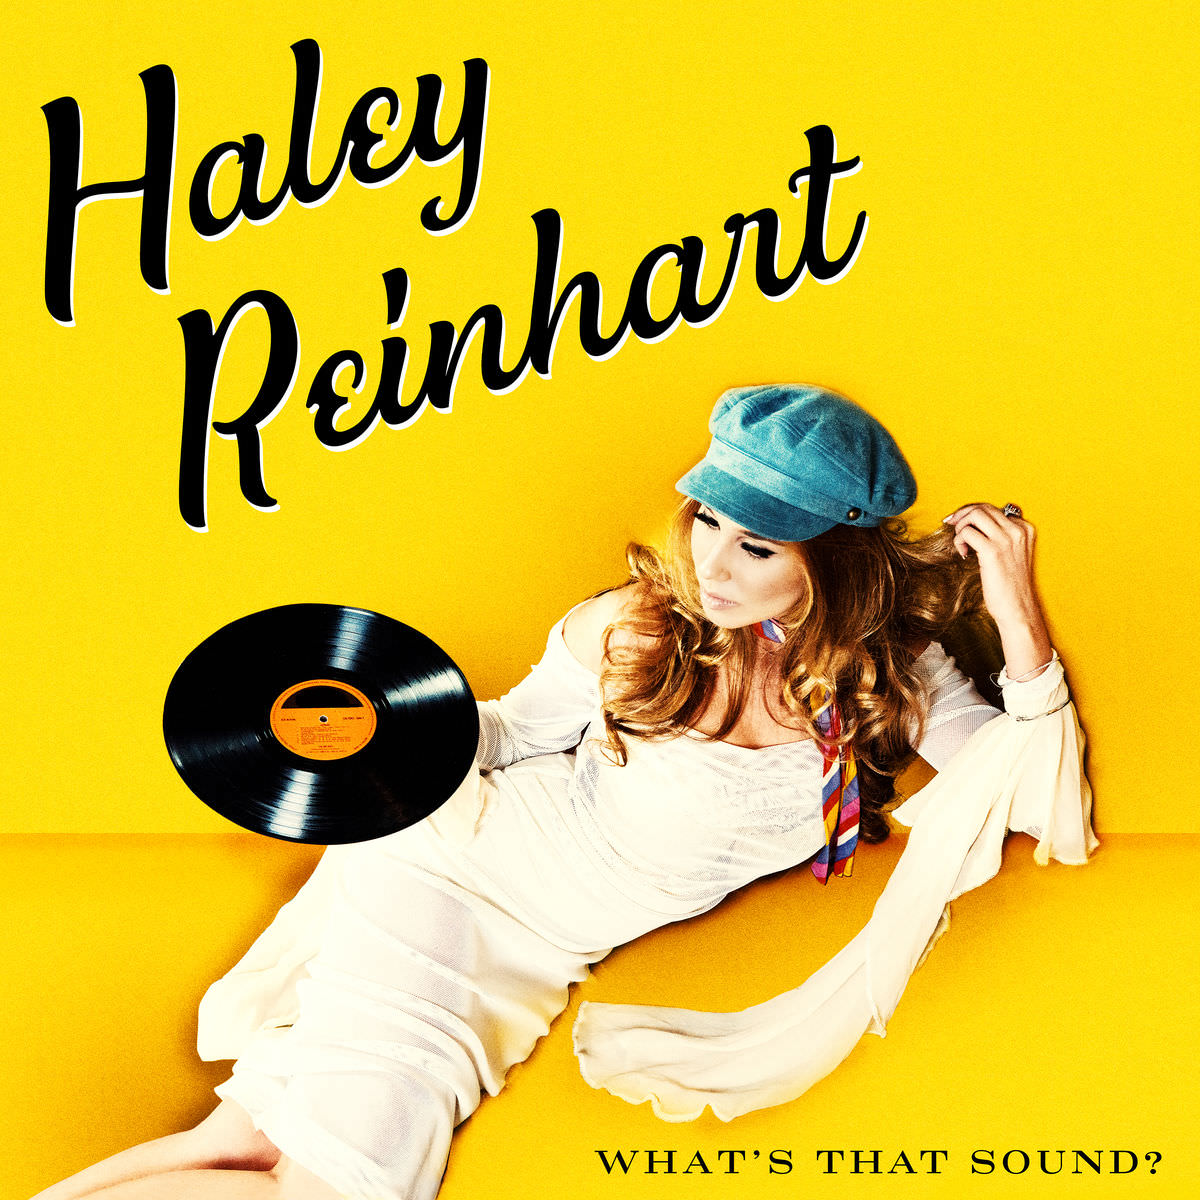 Haley Reinhart - What’s That Sound? (2017) [Qobuz FLAC 24bit/96kHz]